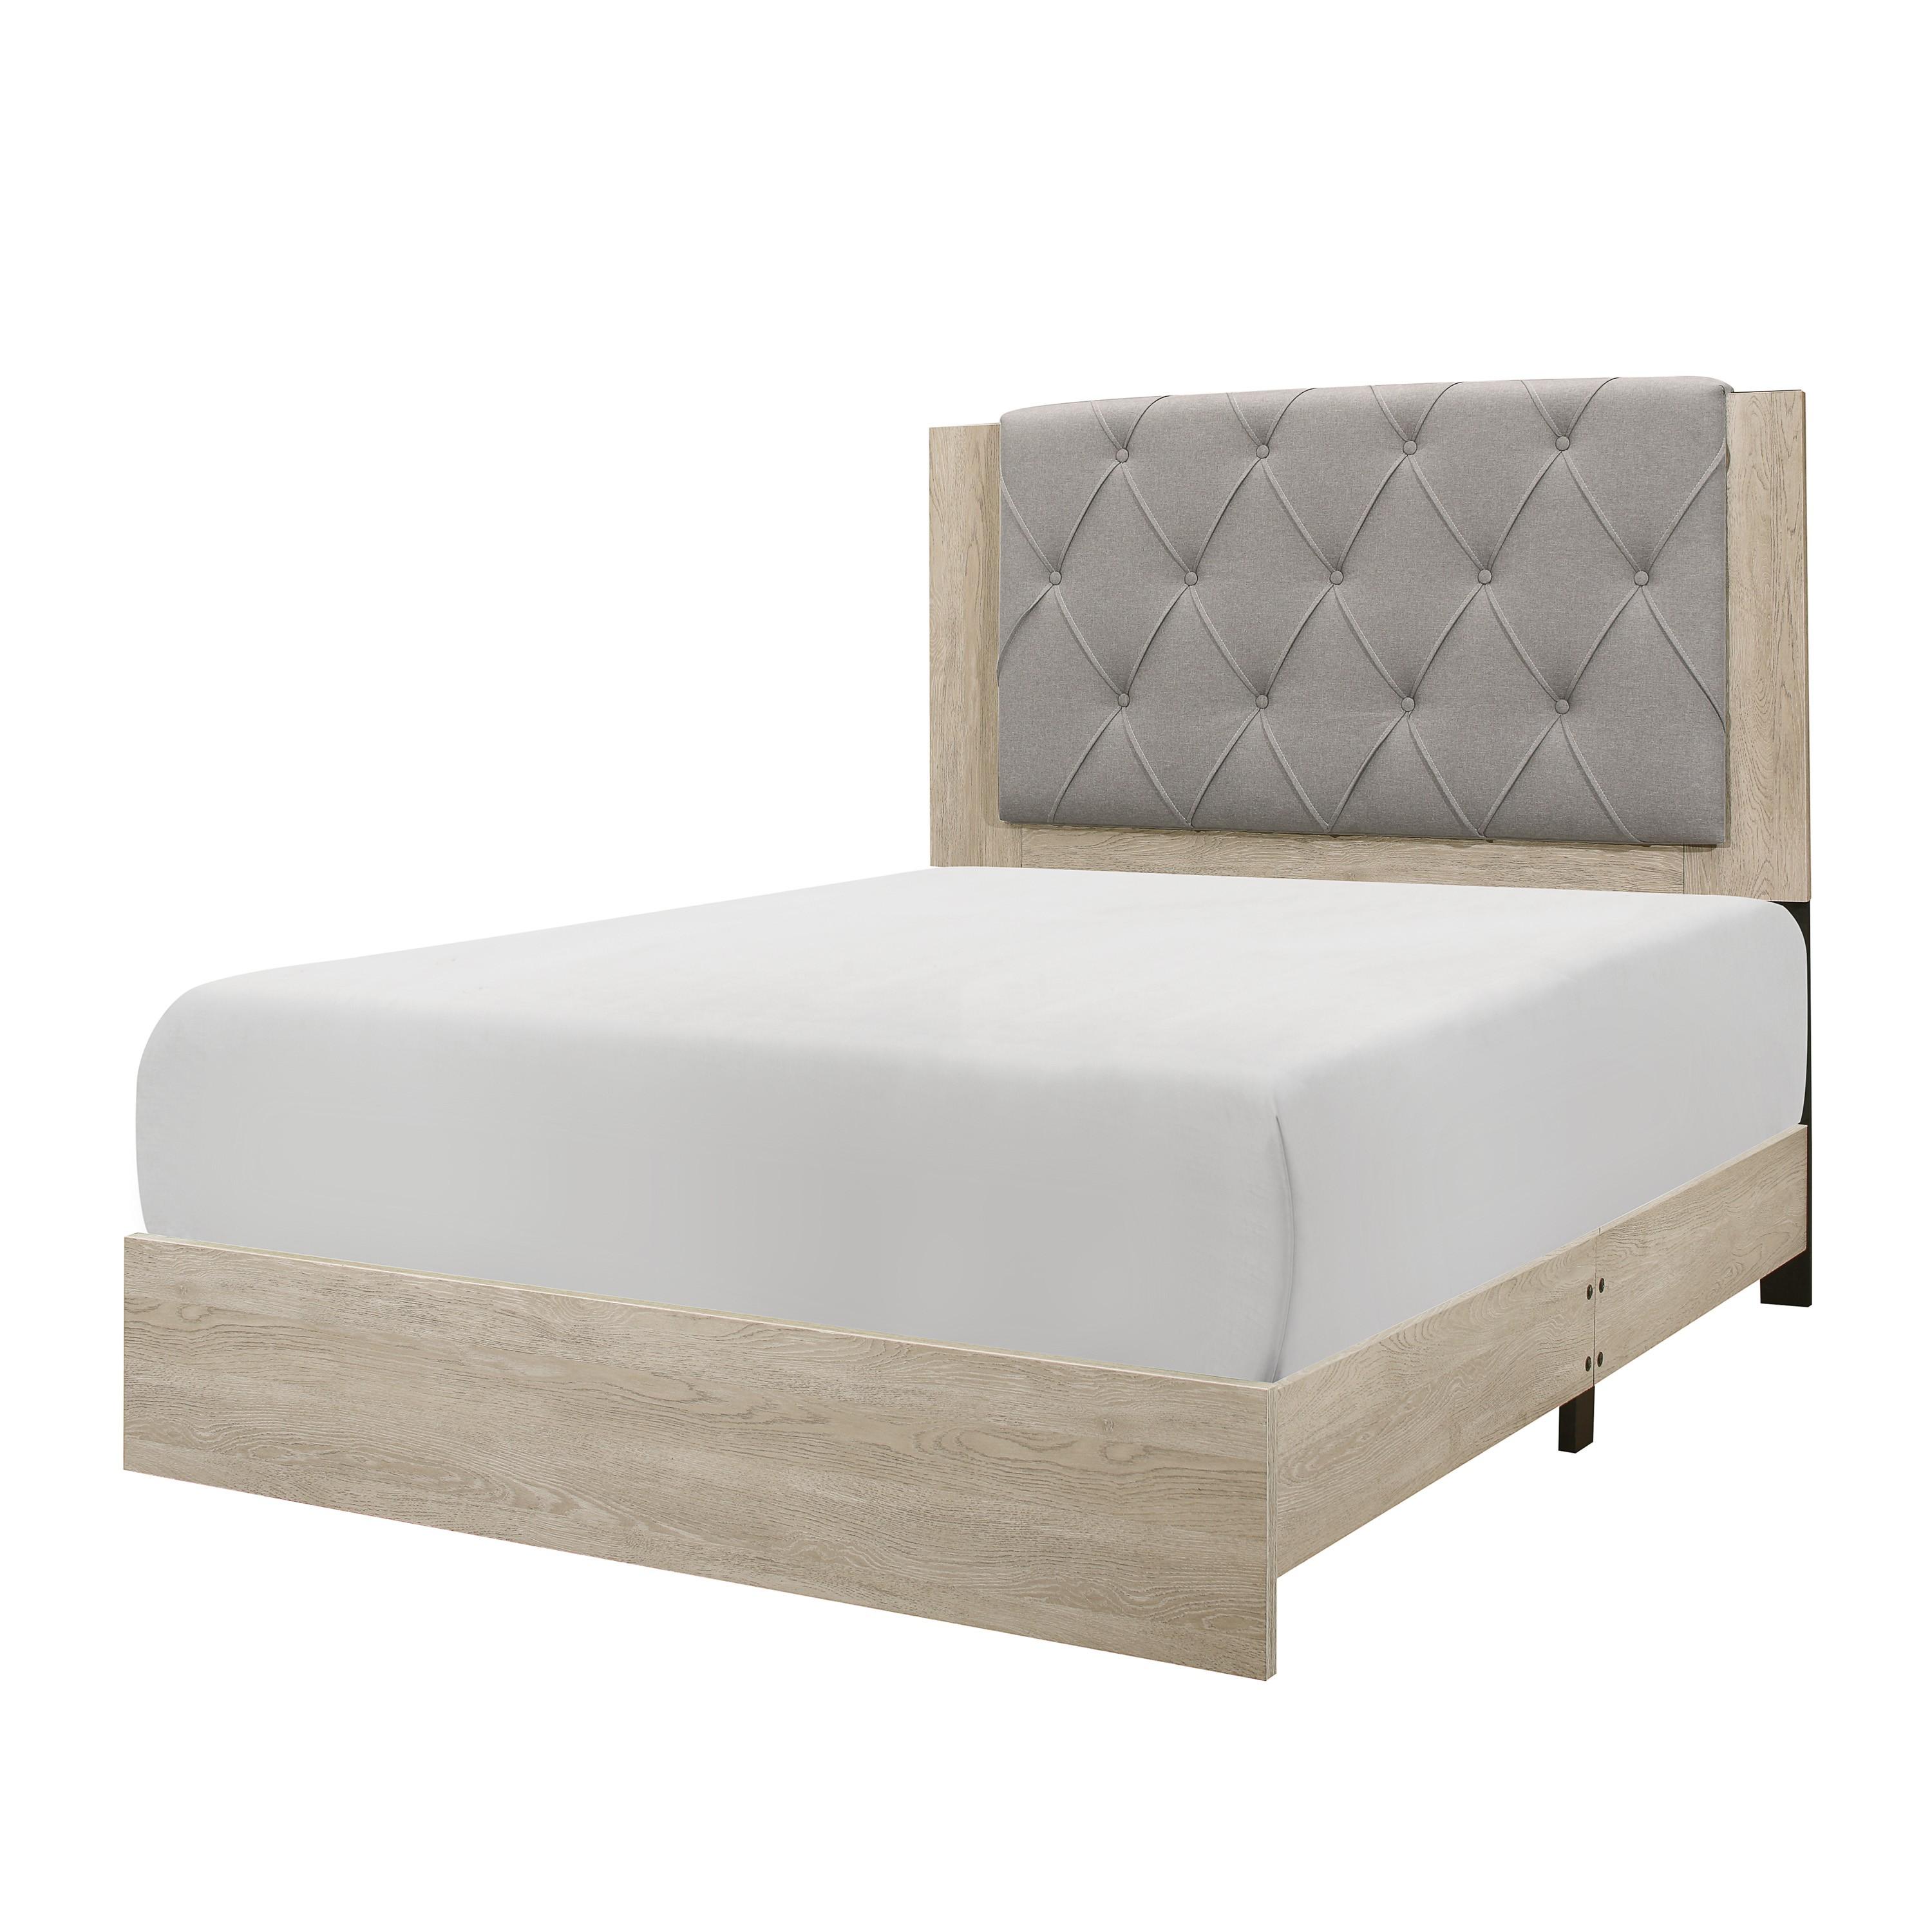 

    
Modern Cream Wood King Bedroom Set 6pcs Homelegance 1524K-1EK Whiting
